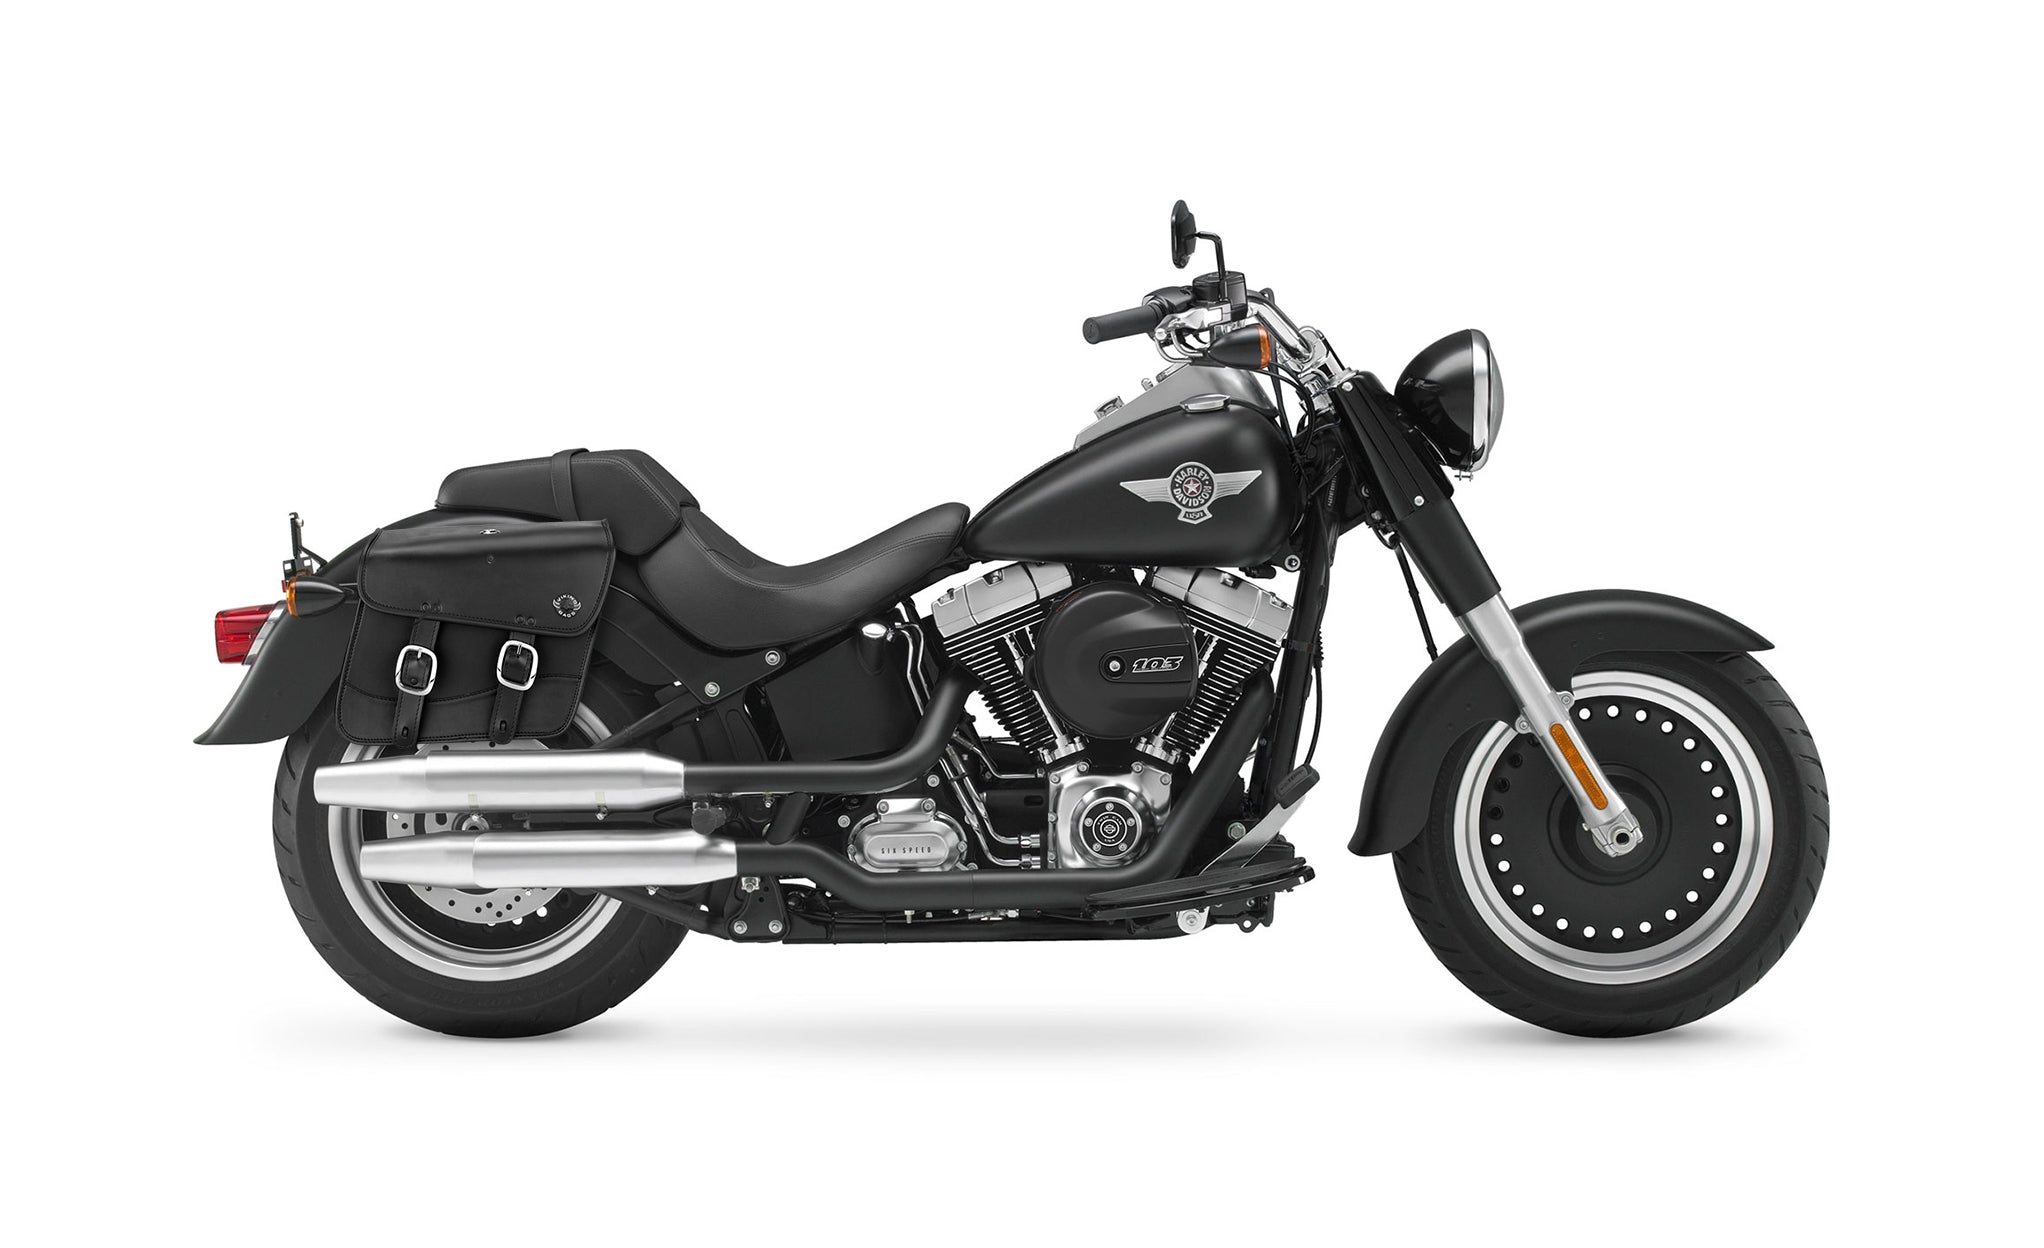 Viking Thor Medium Leather Motorcycle Saddlebags For Harley Davidson Softail Fat Boy Lo Flstfb on Bike Photo @expand